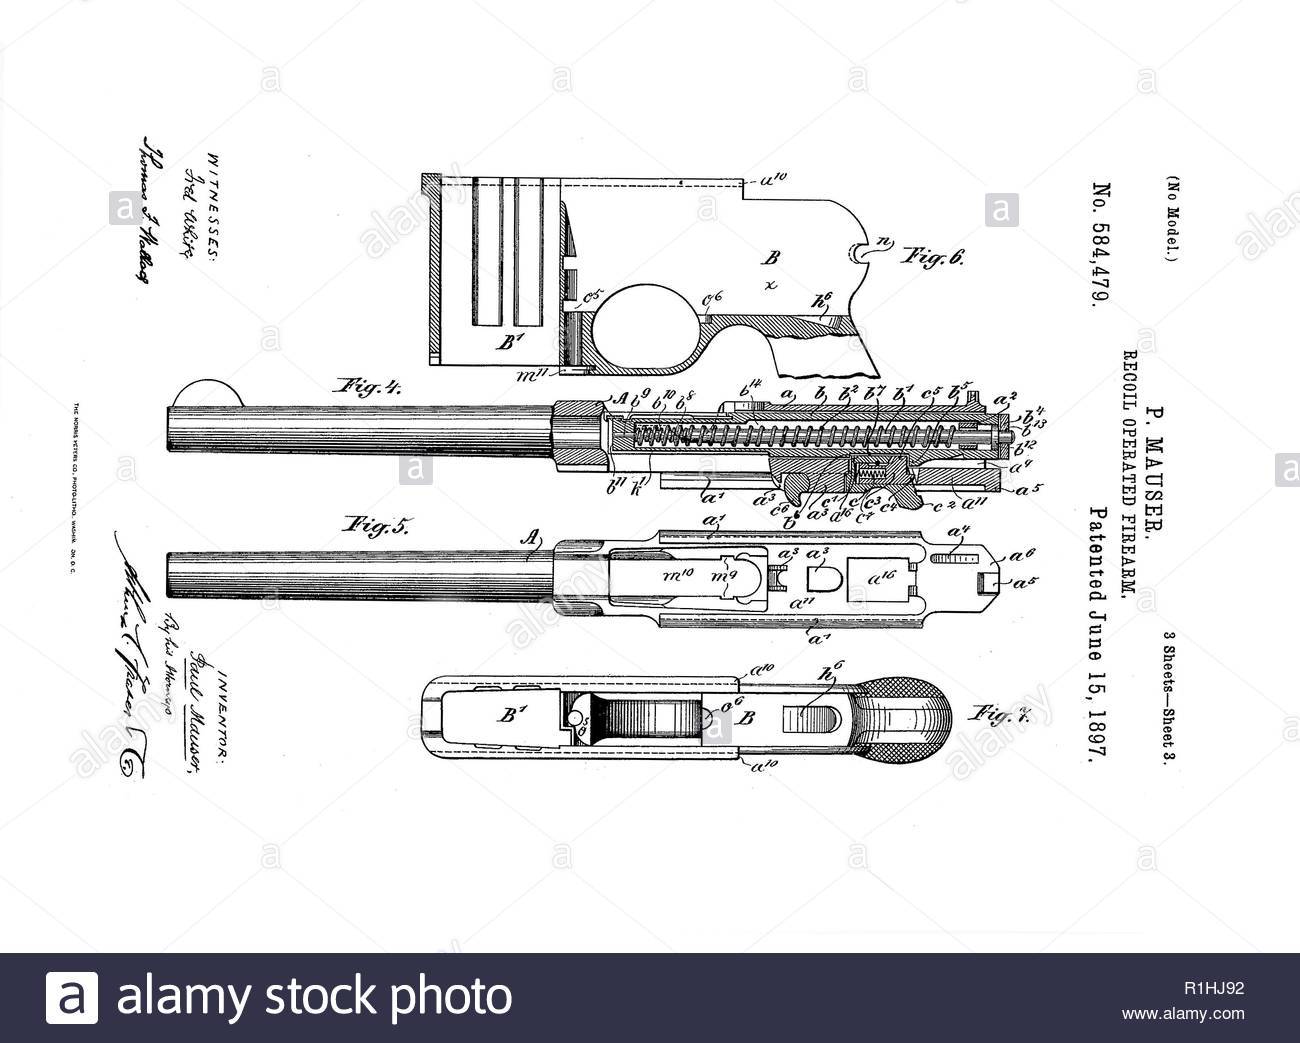 Пневматический пистолет маузер (mauser c96) - кайзеровская новинка от umarex